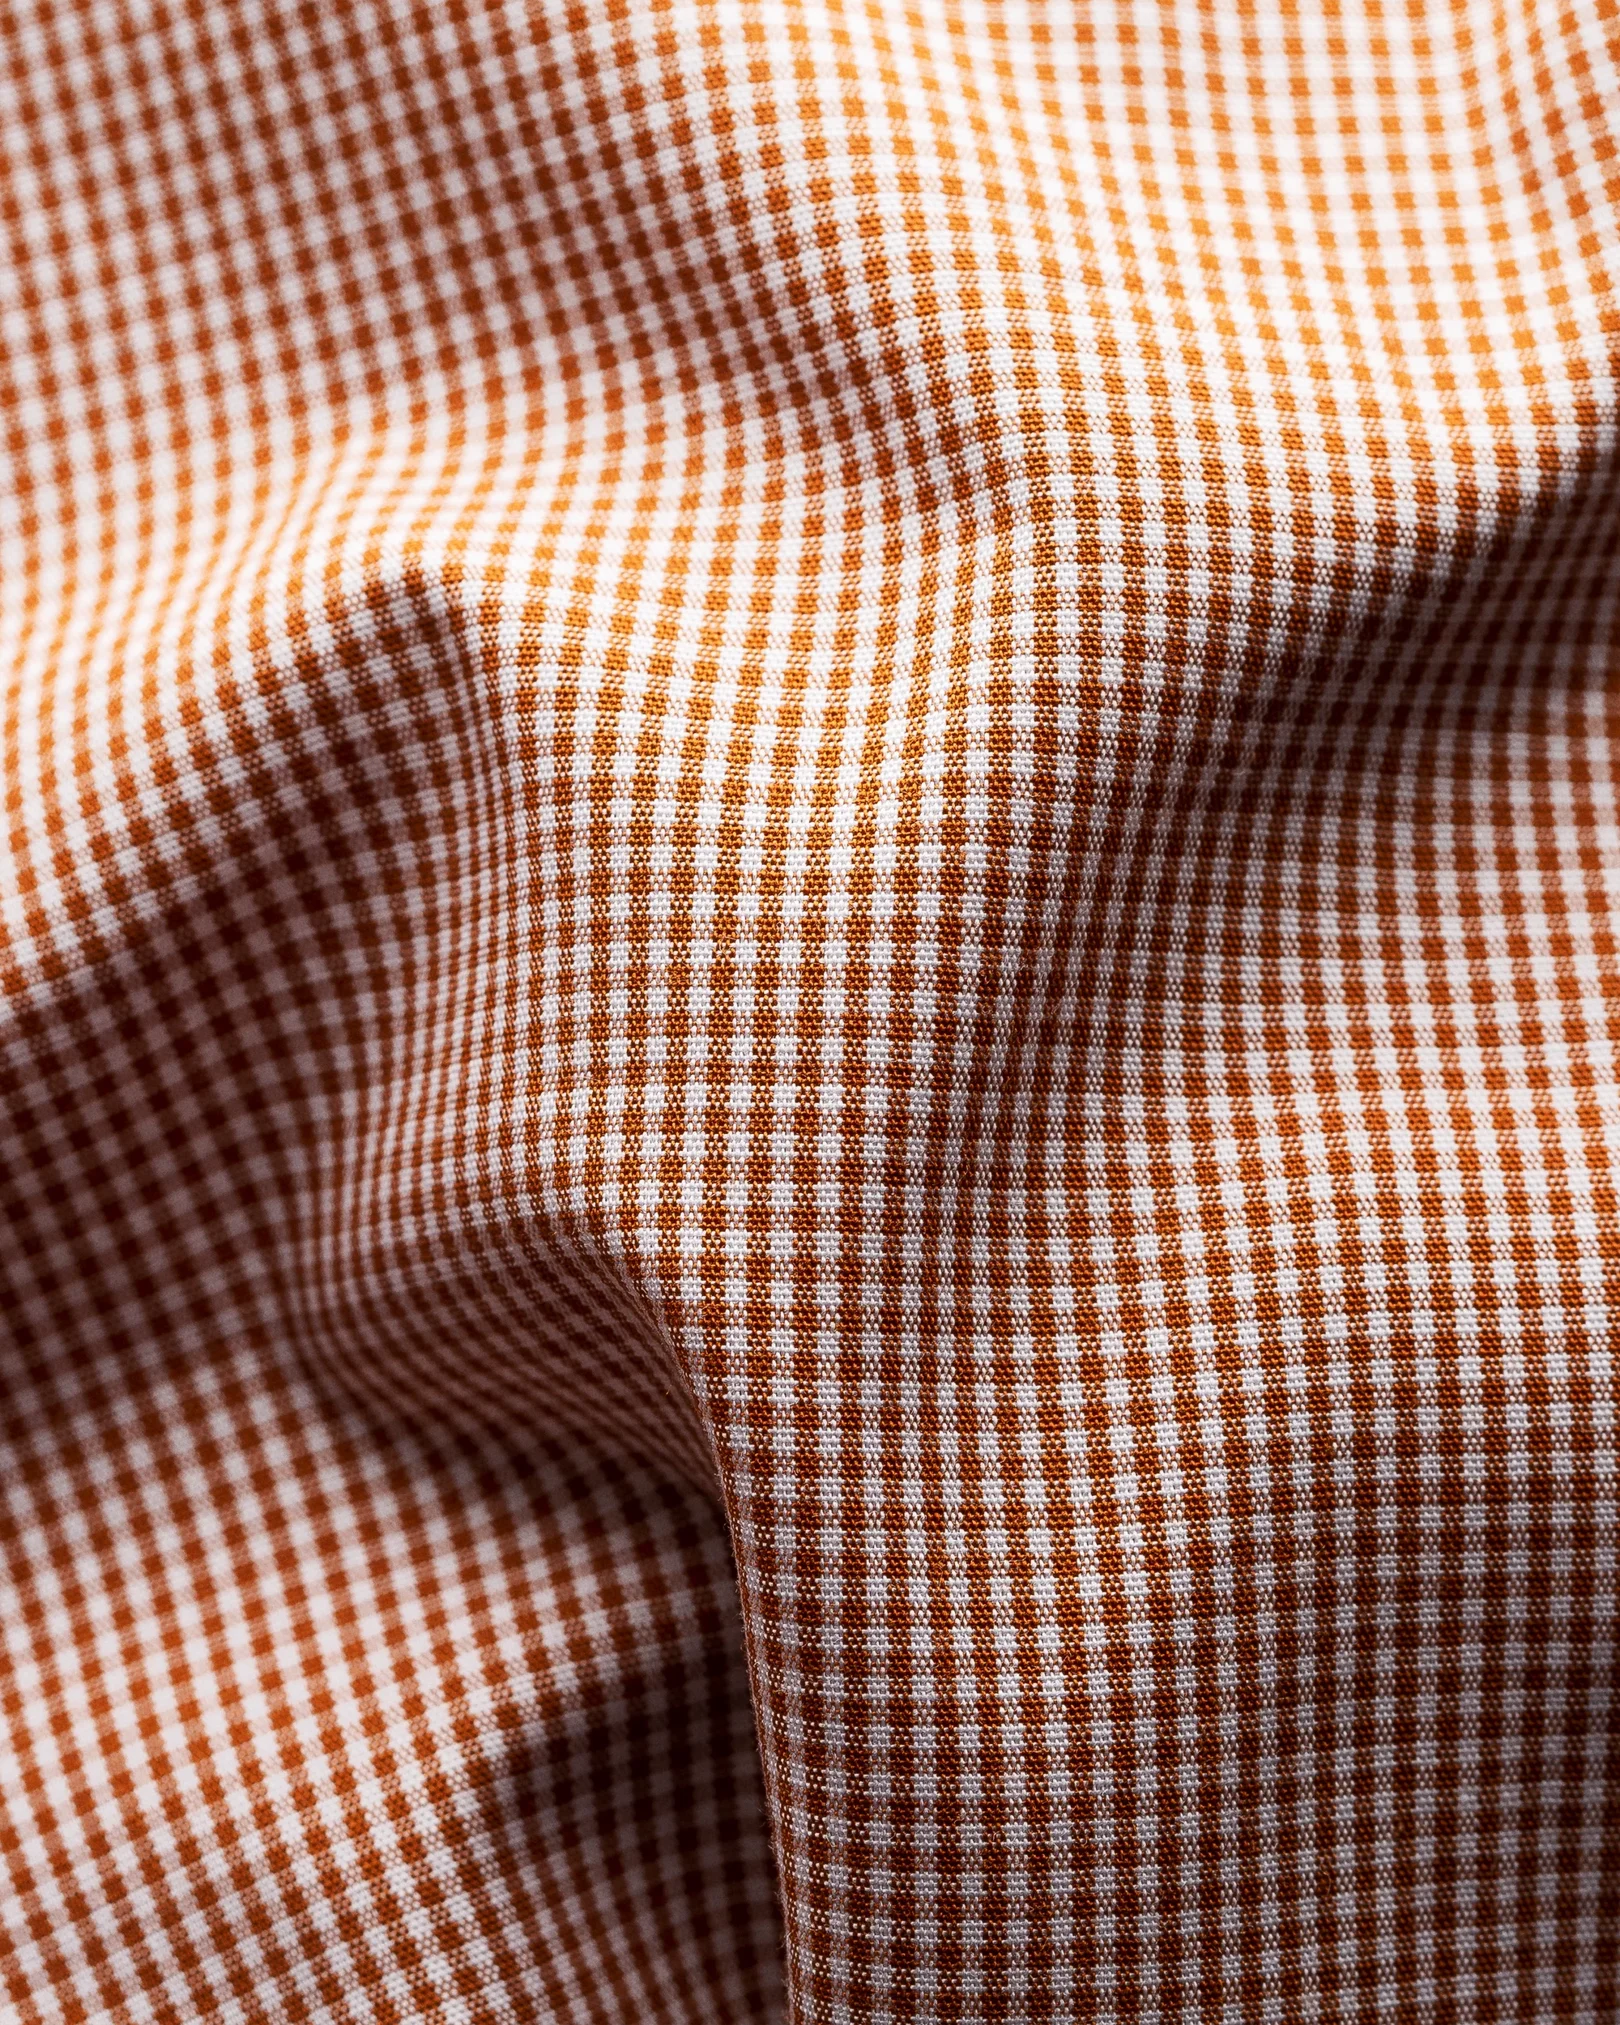 Eton - brown gingham extreme cut away poplin shirt